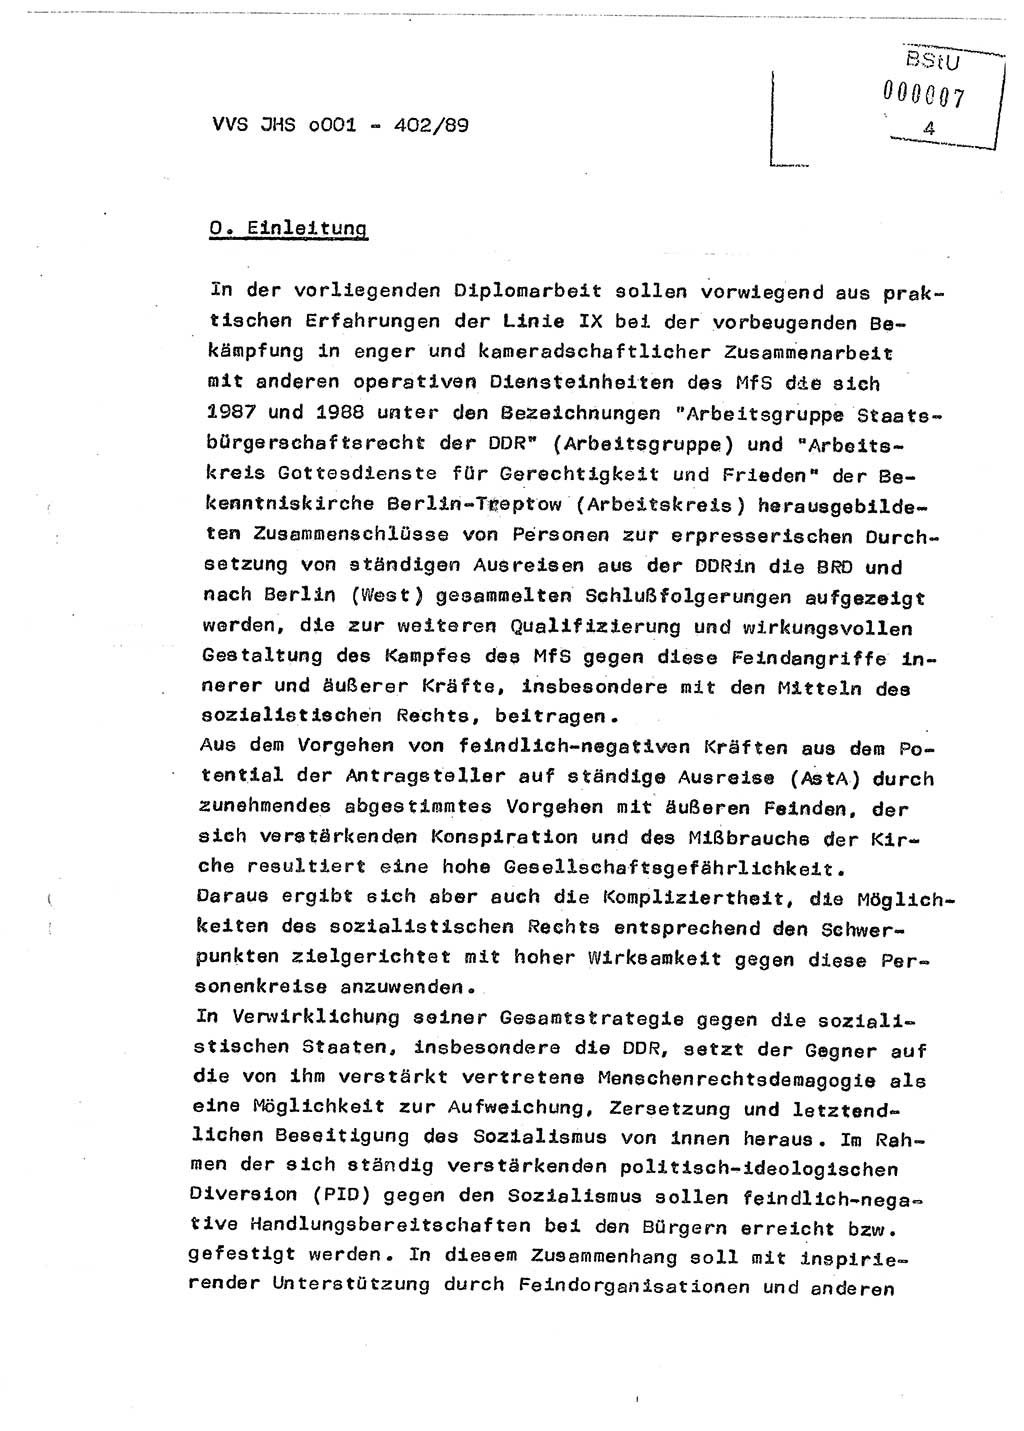 Diplomarbeit Major Günter Müller (HA Ⅸ/9), Ministerium für Staatssicherheit (MfS) [Deutsche Demokratische Republik (DDR)], Juristische Hochschule (JHS), Vertrauliche Verschlußsache (VVS) o001-402/89, Potsdam 1989, Seite 4 (Dipl.-Arb. MfS DDR JHS VVS o001-402/89 1989, S. 4)